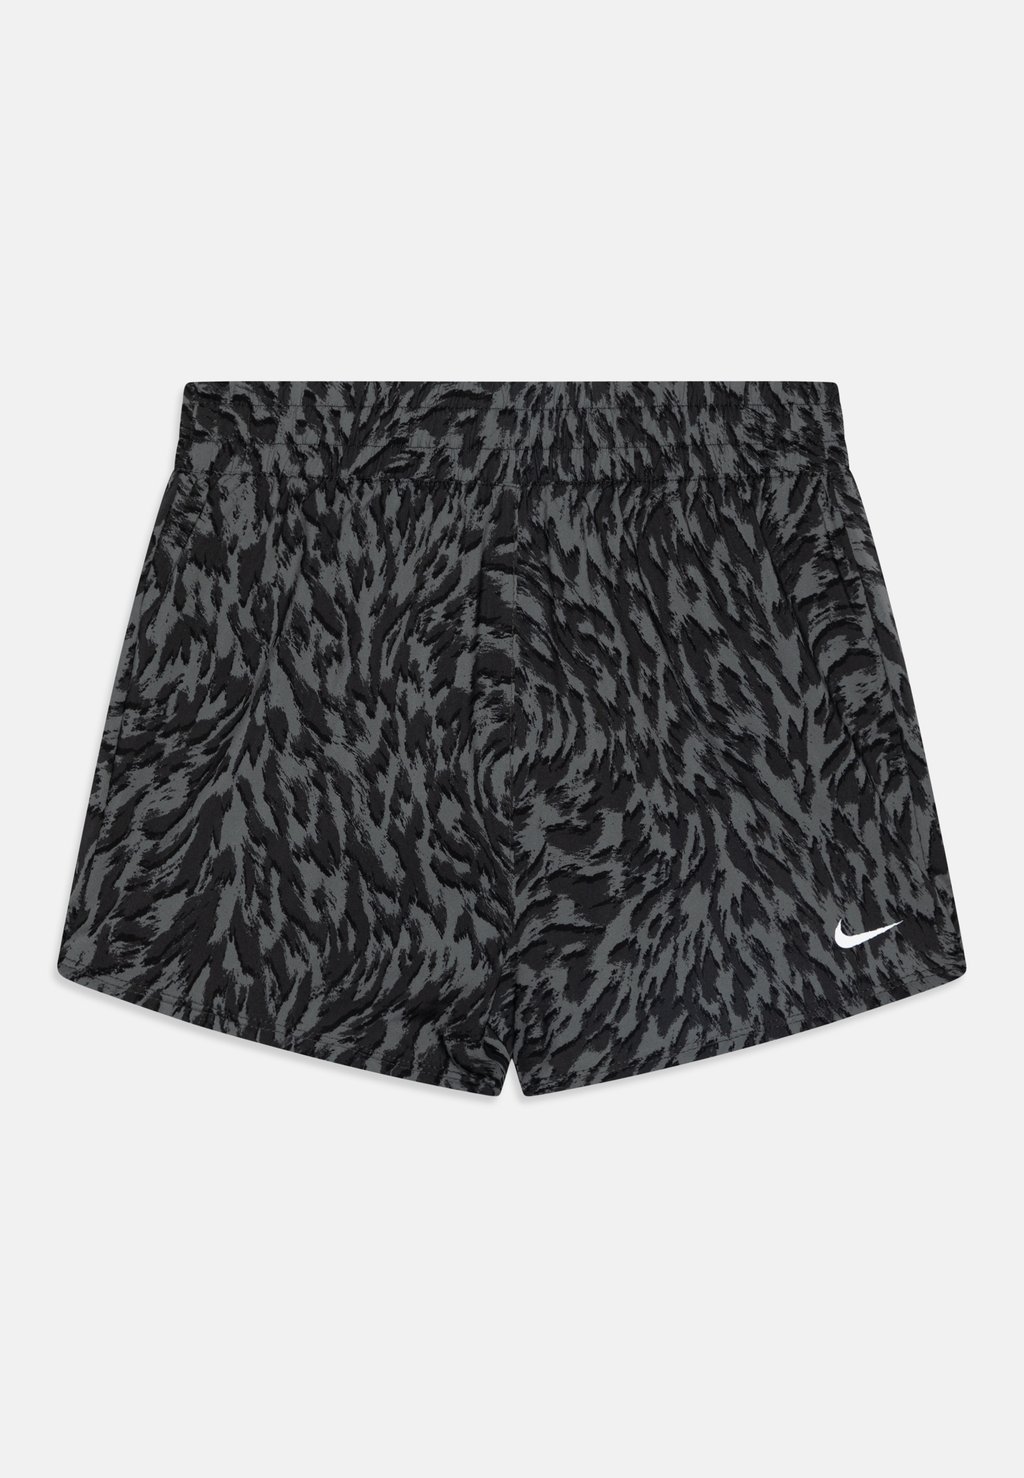 Спортивные шорты Df One Unisex Nike, цвет smoke grey/dark smoke grey/white кроссовки metcon 9 dark smoke grey серый